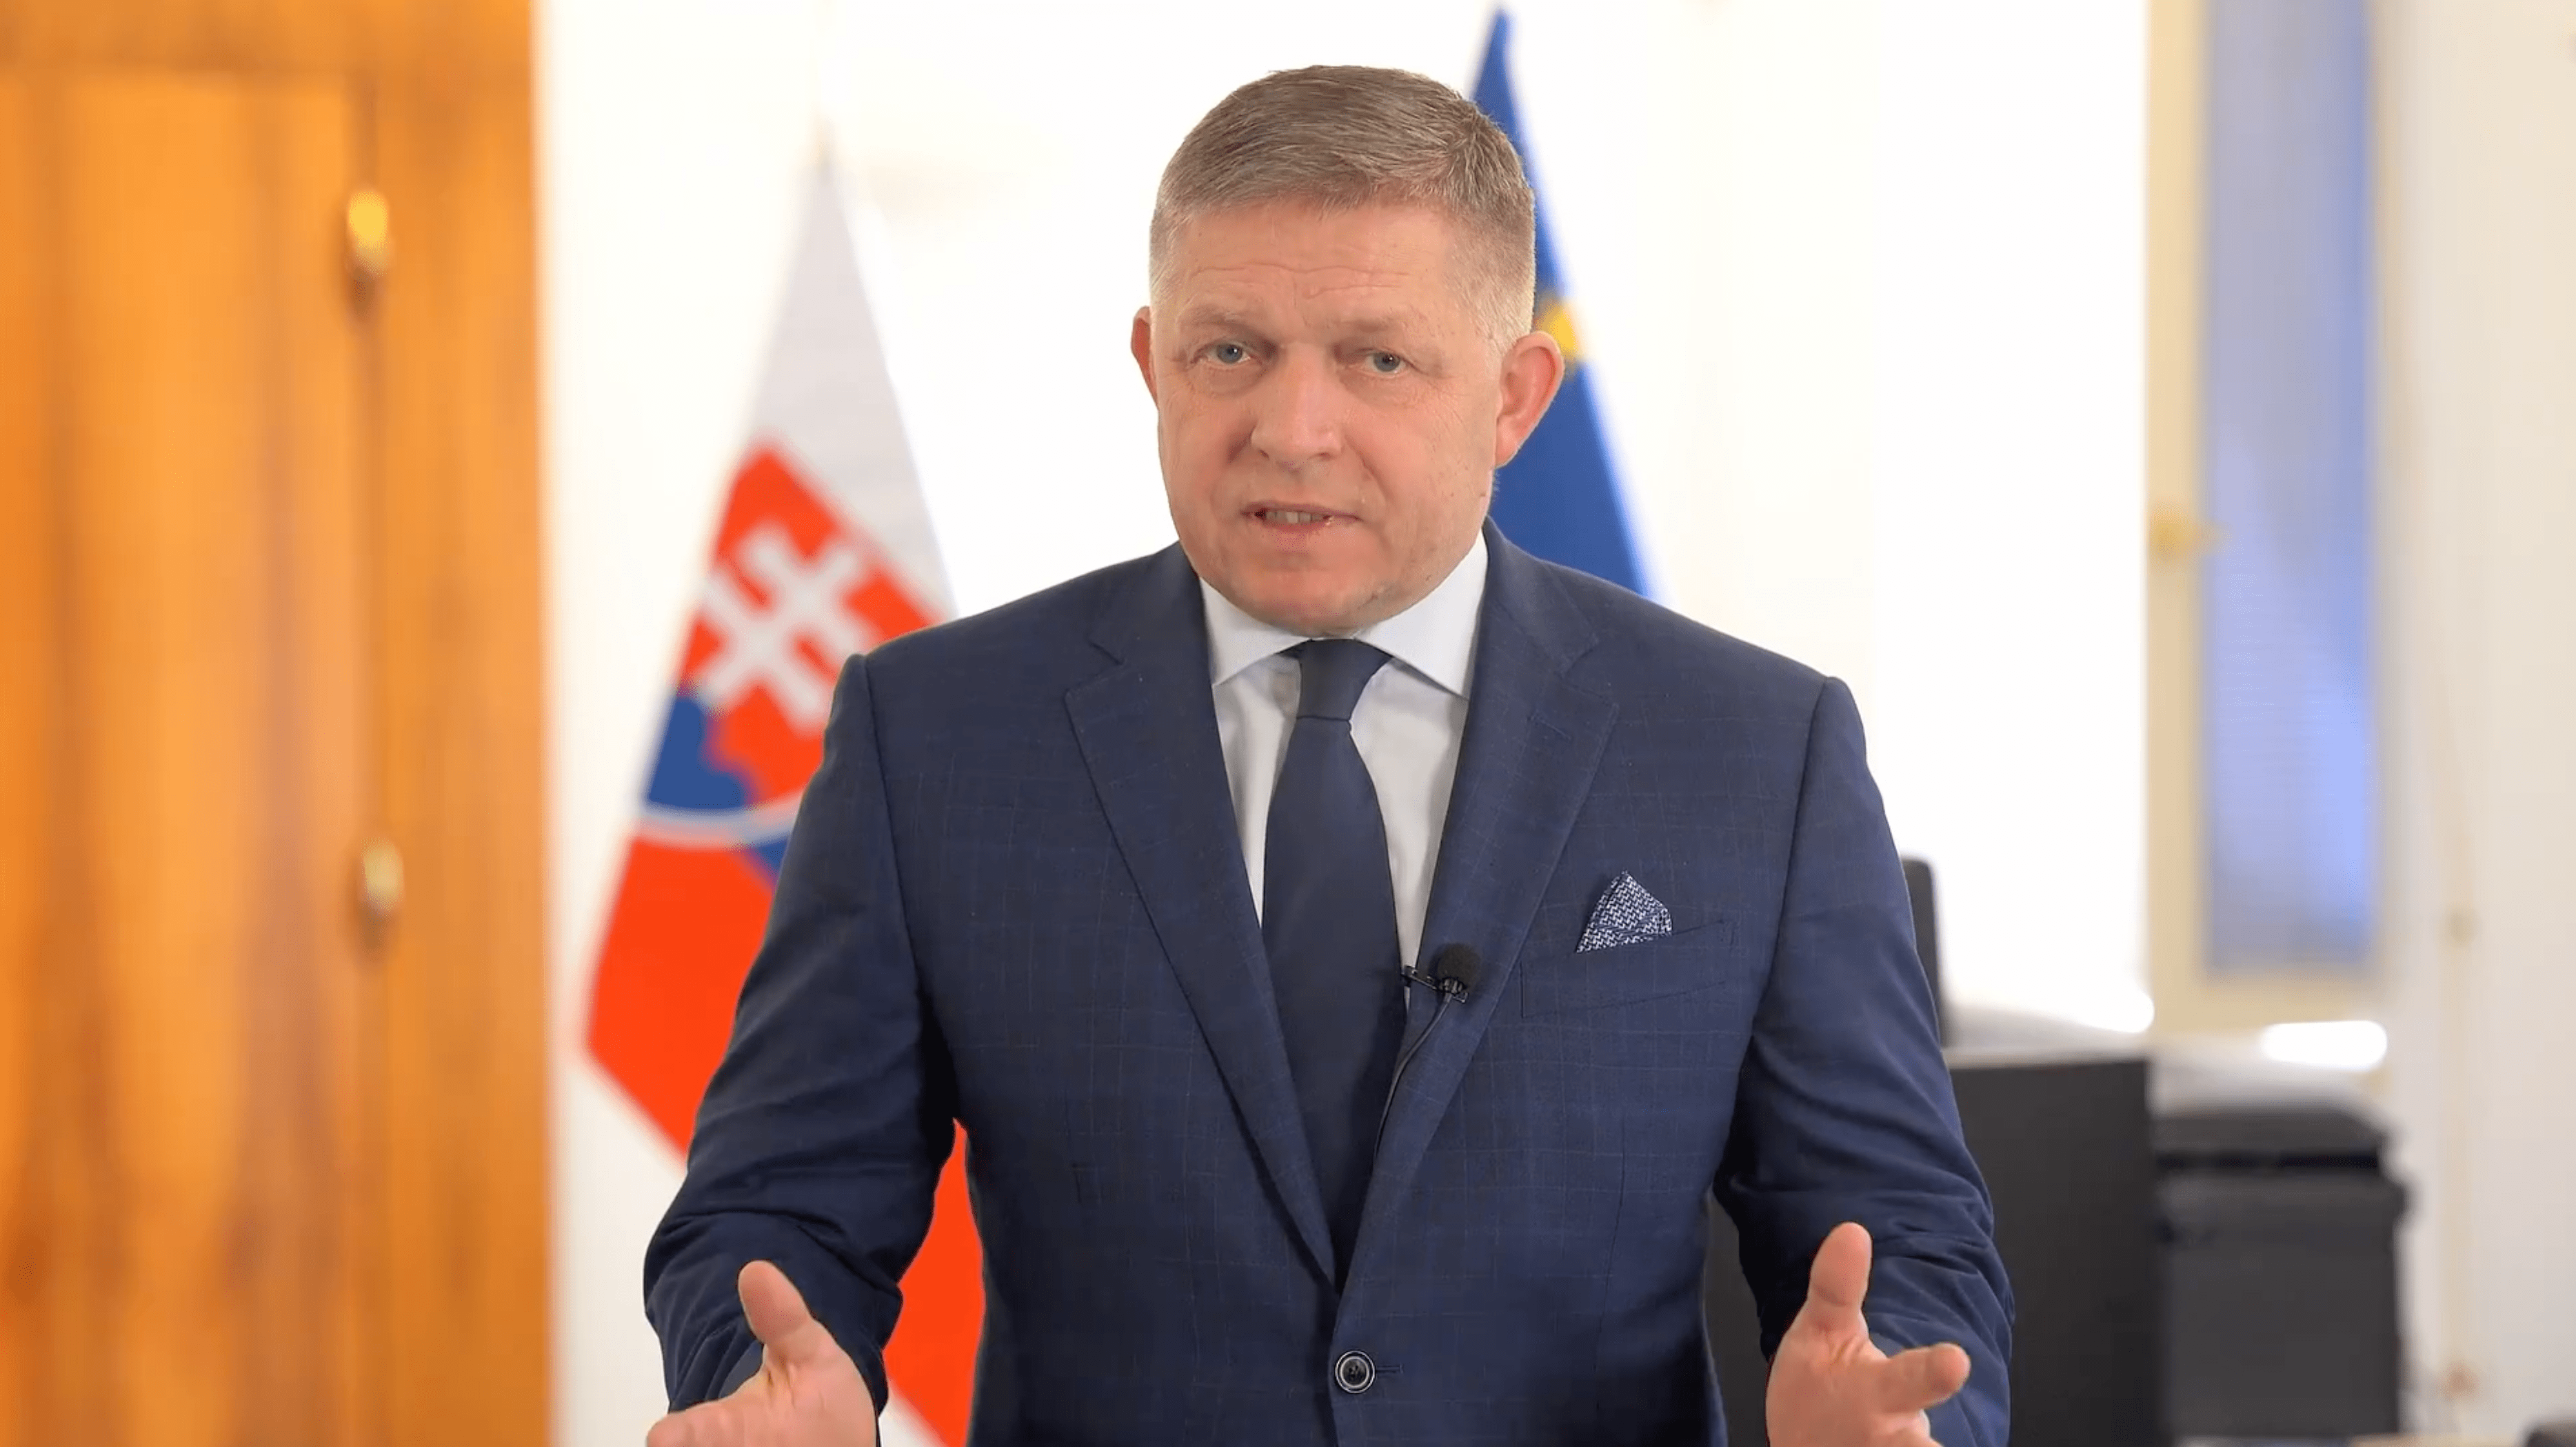 Kontrowersyjne Wypowiedzi Premiera Słowacji: Ukraina Jest Pod Kontrolą USA i Musi Oddać Część Terytoriów